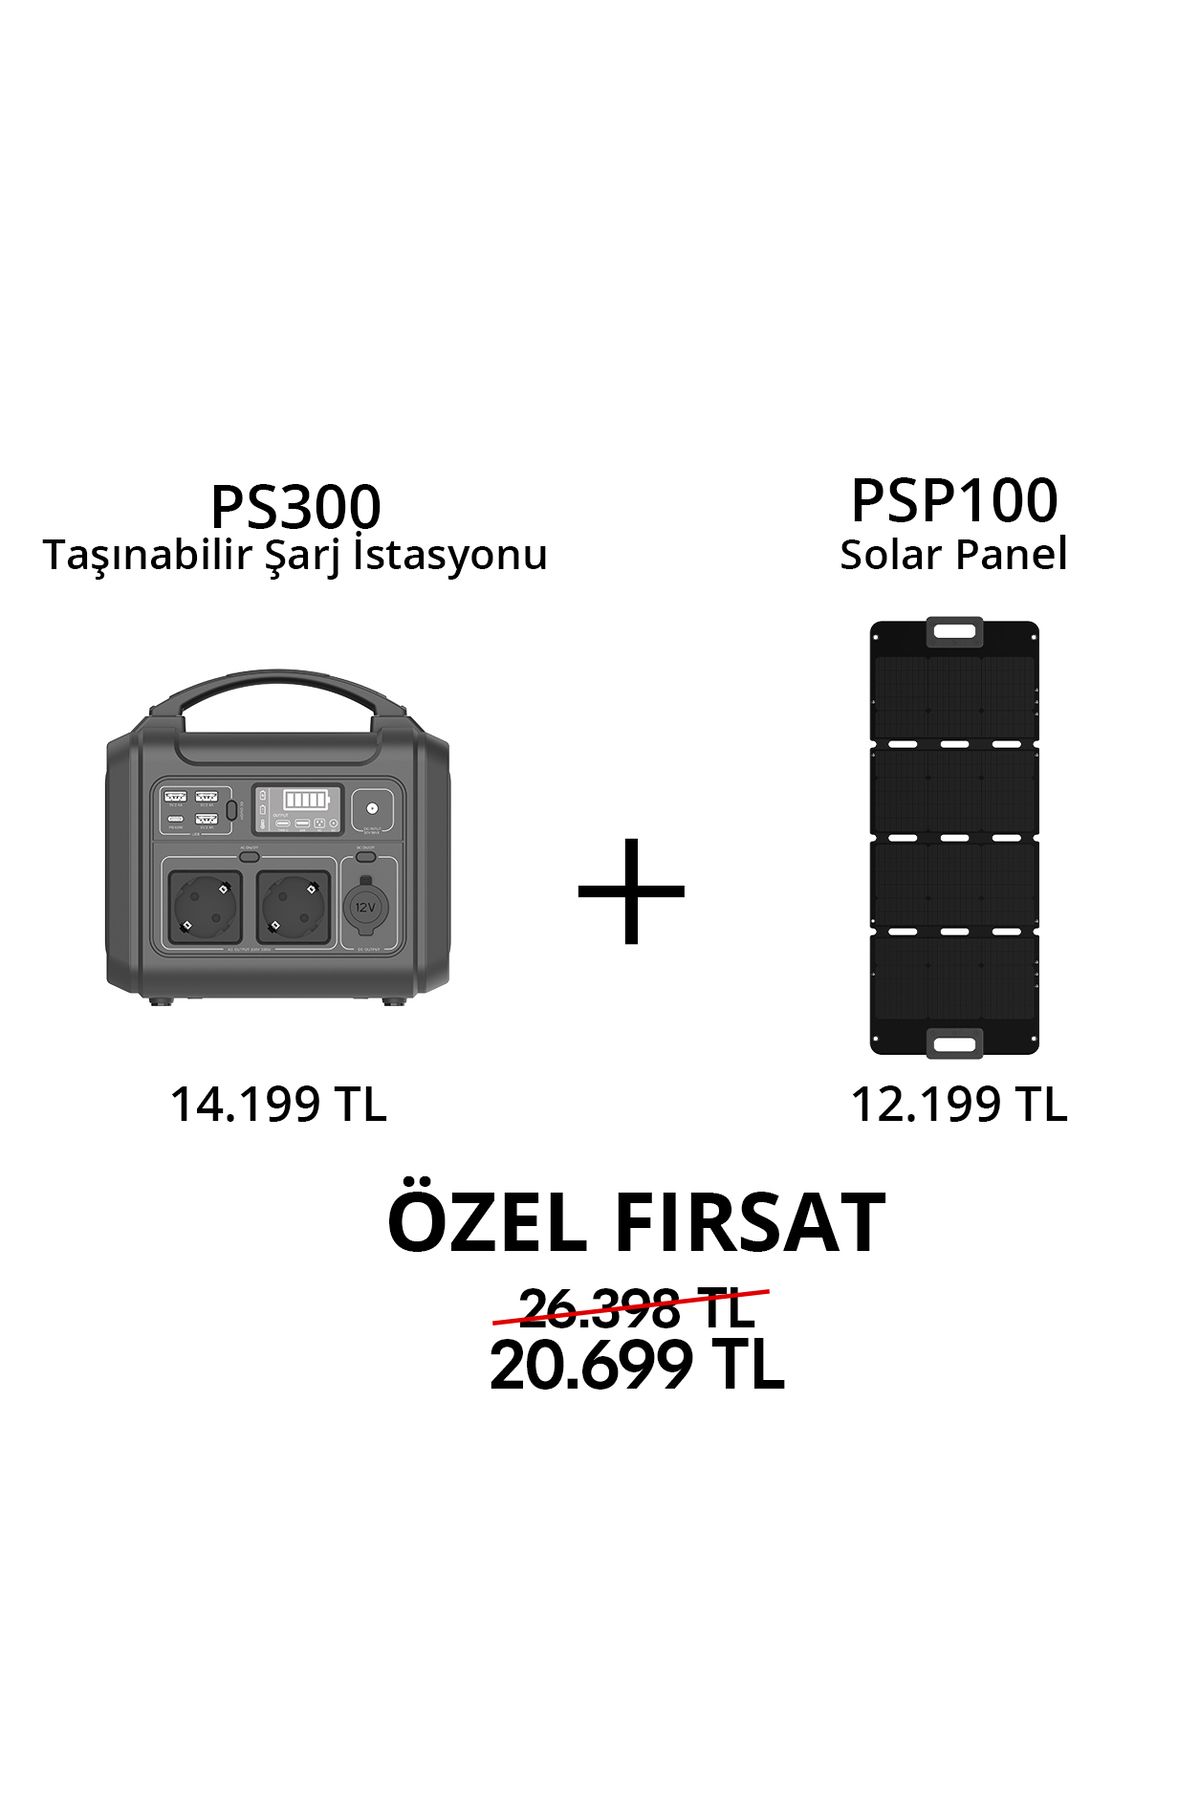 EZVIZ PS300 Taşınabilir Şarj İstasyonu ve PSP100 Solar Panel Uyumlu